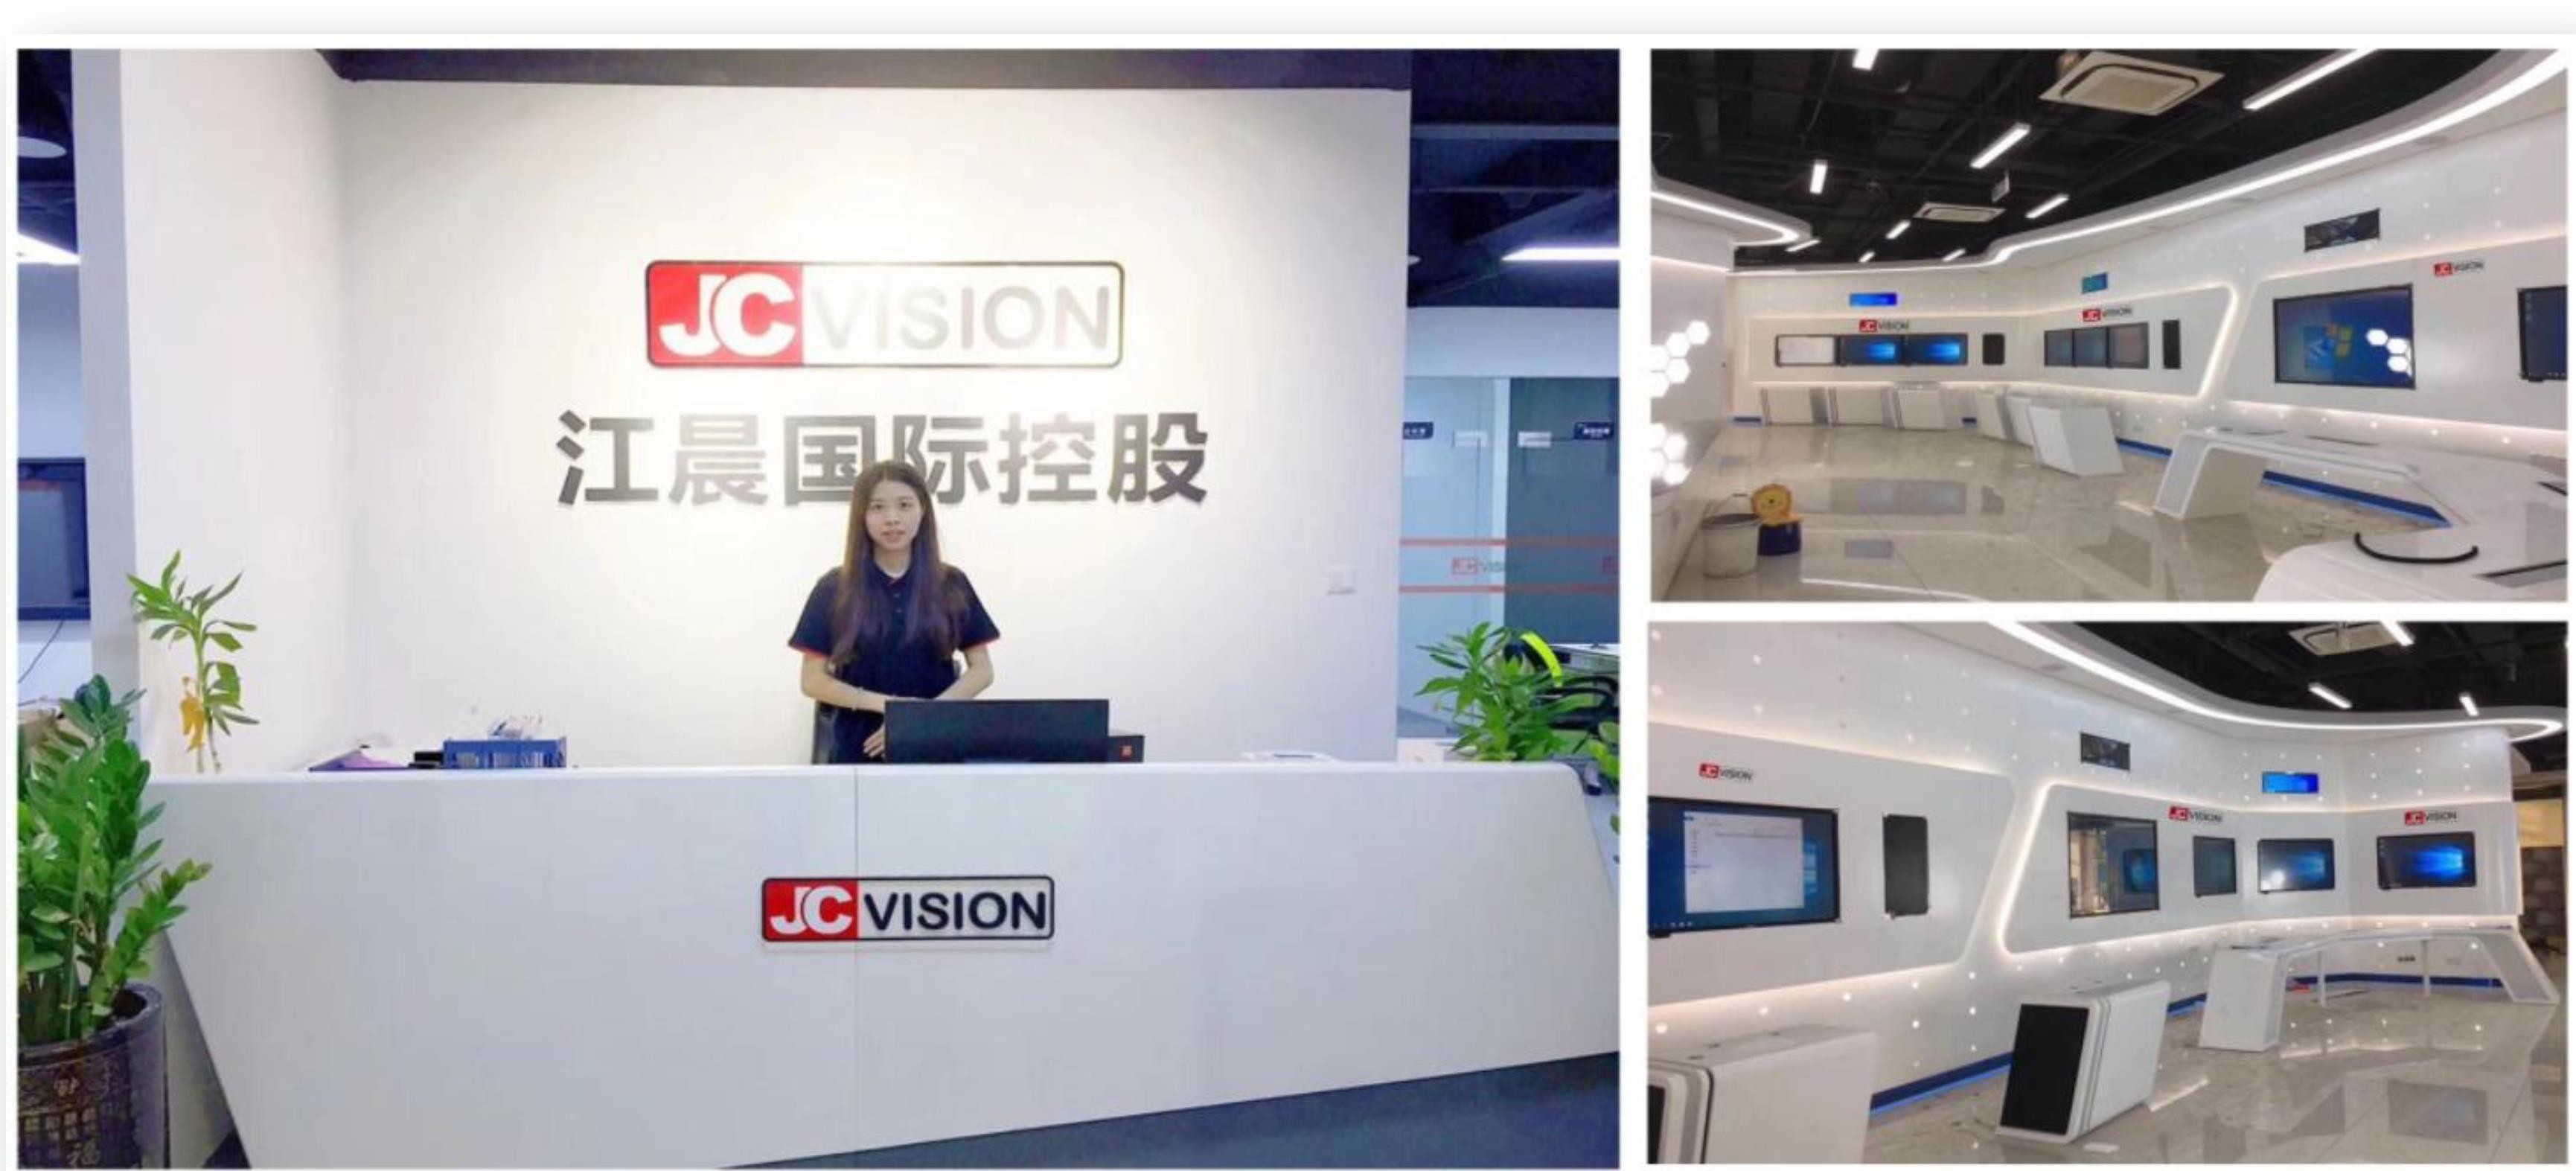 Shenzhen Junction Interactive Technology Co., Ltd. 工場生産ライン